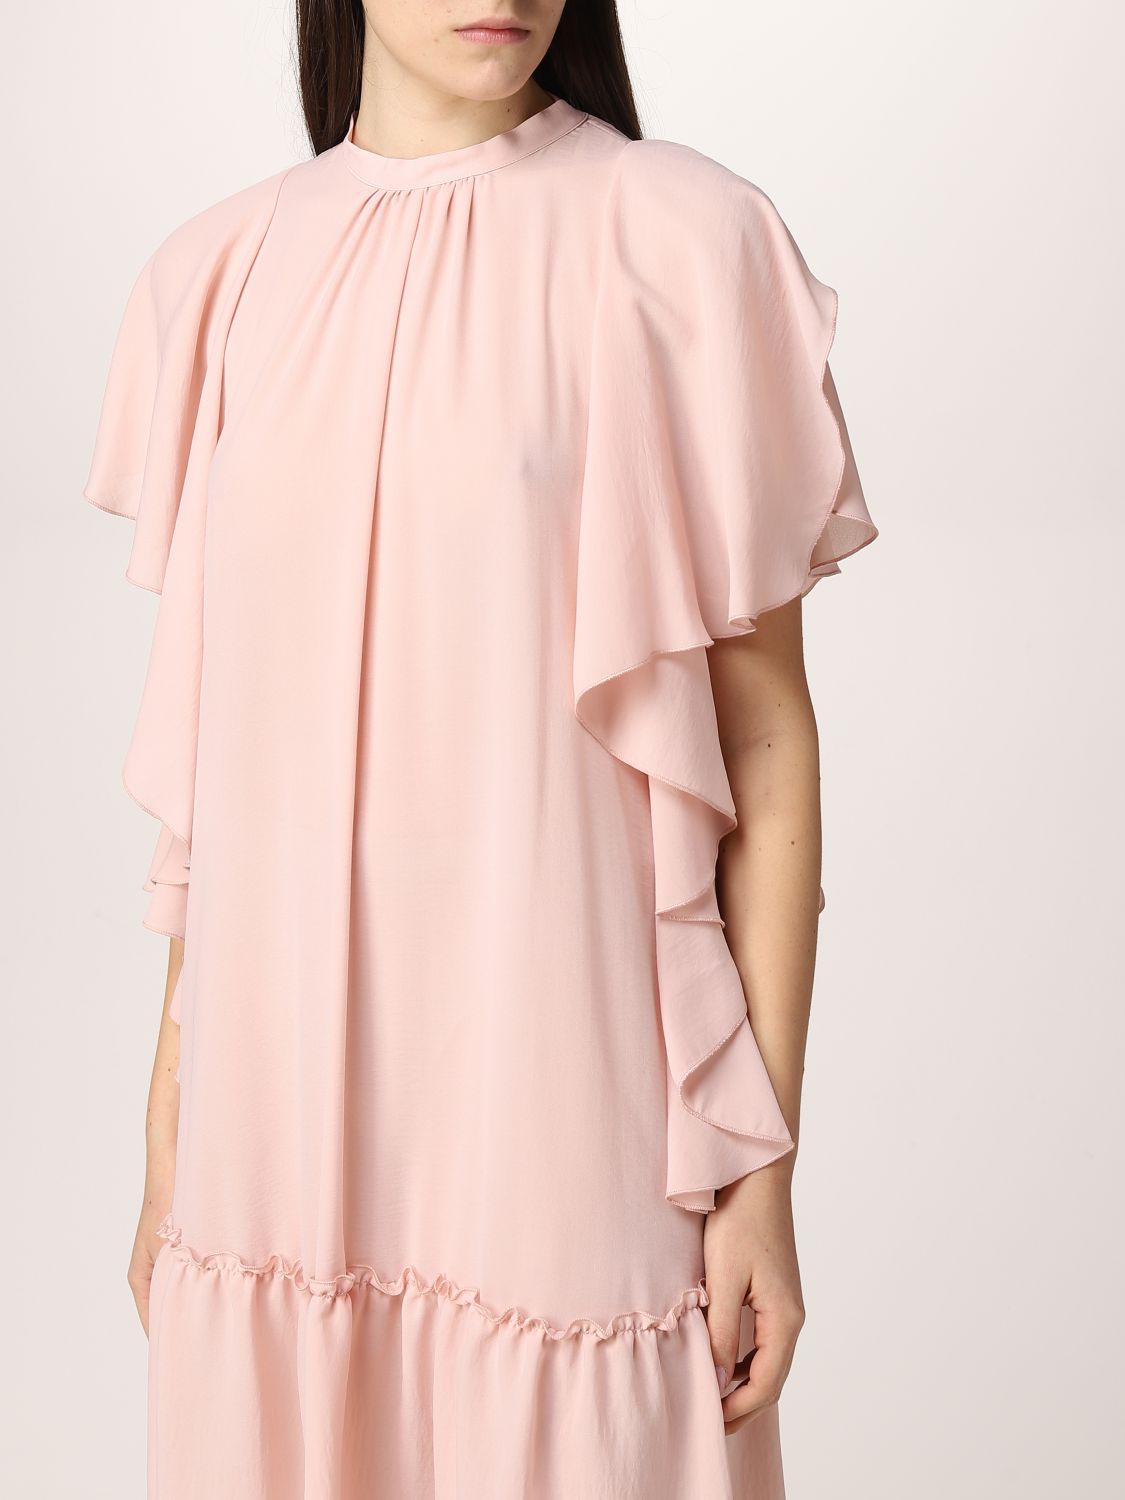 Dress Hanita: Dress women Hanita blush pink 3